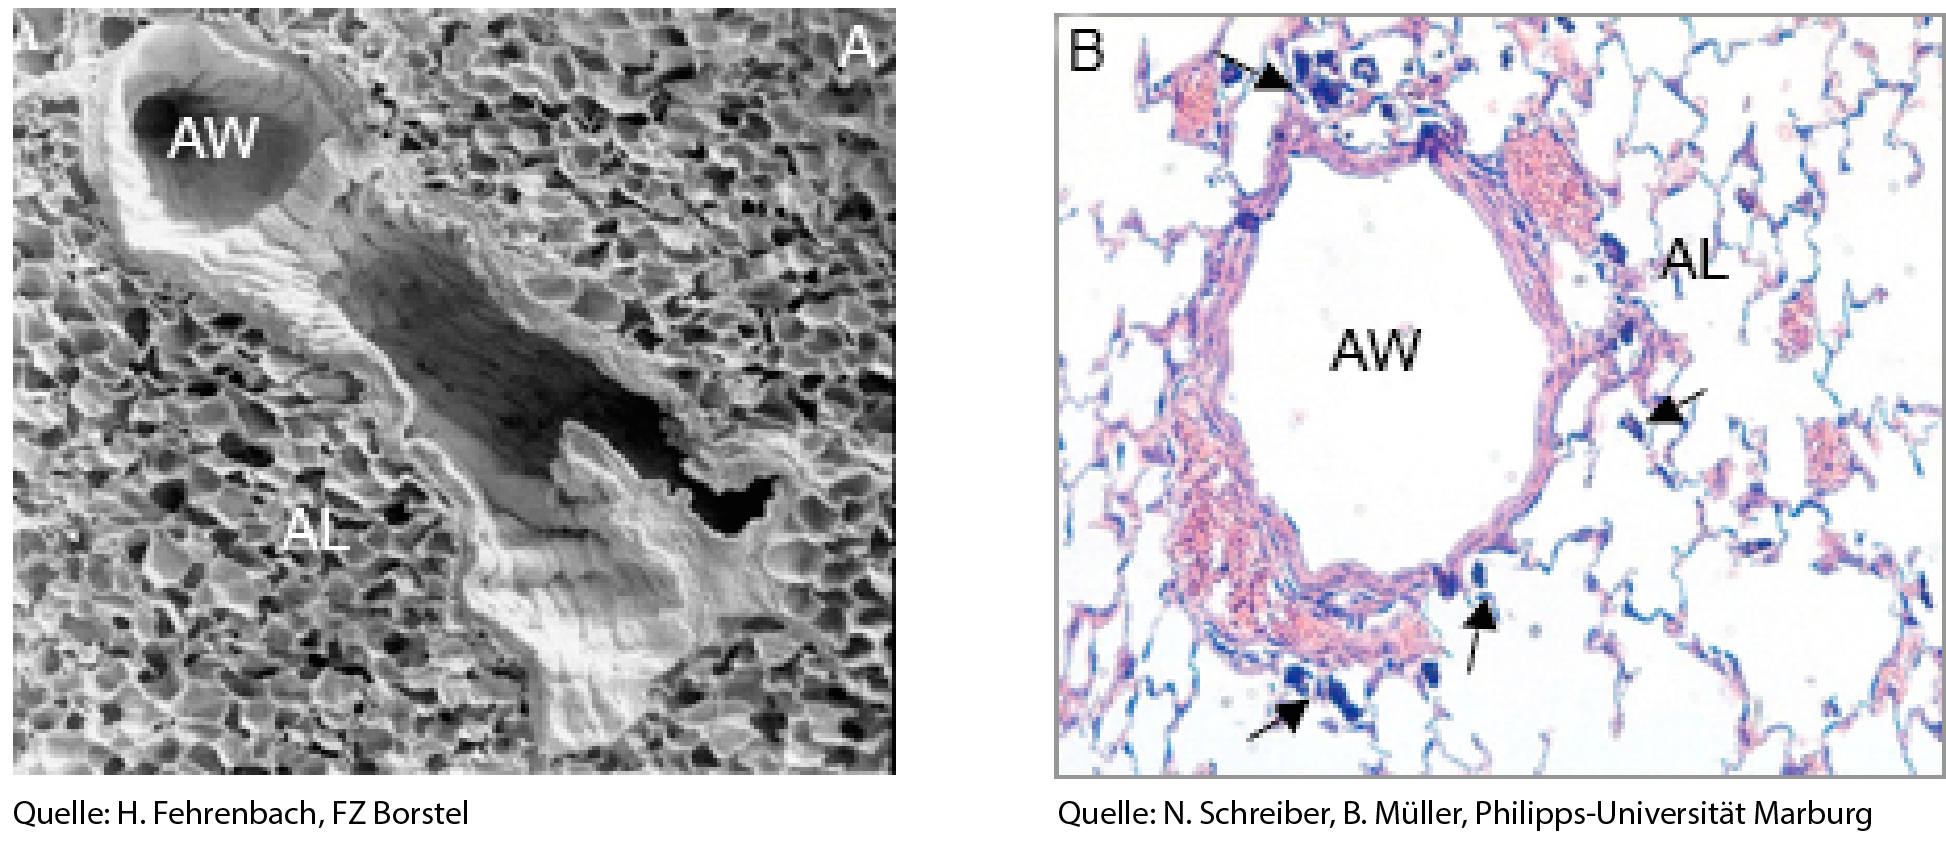 Querschnitte durch die Lunge (links) und eine Alveole (rechts) von Versuchstieren, die im Versuch Carbon Black Nanopartikel eingeatmet haben. 